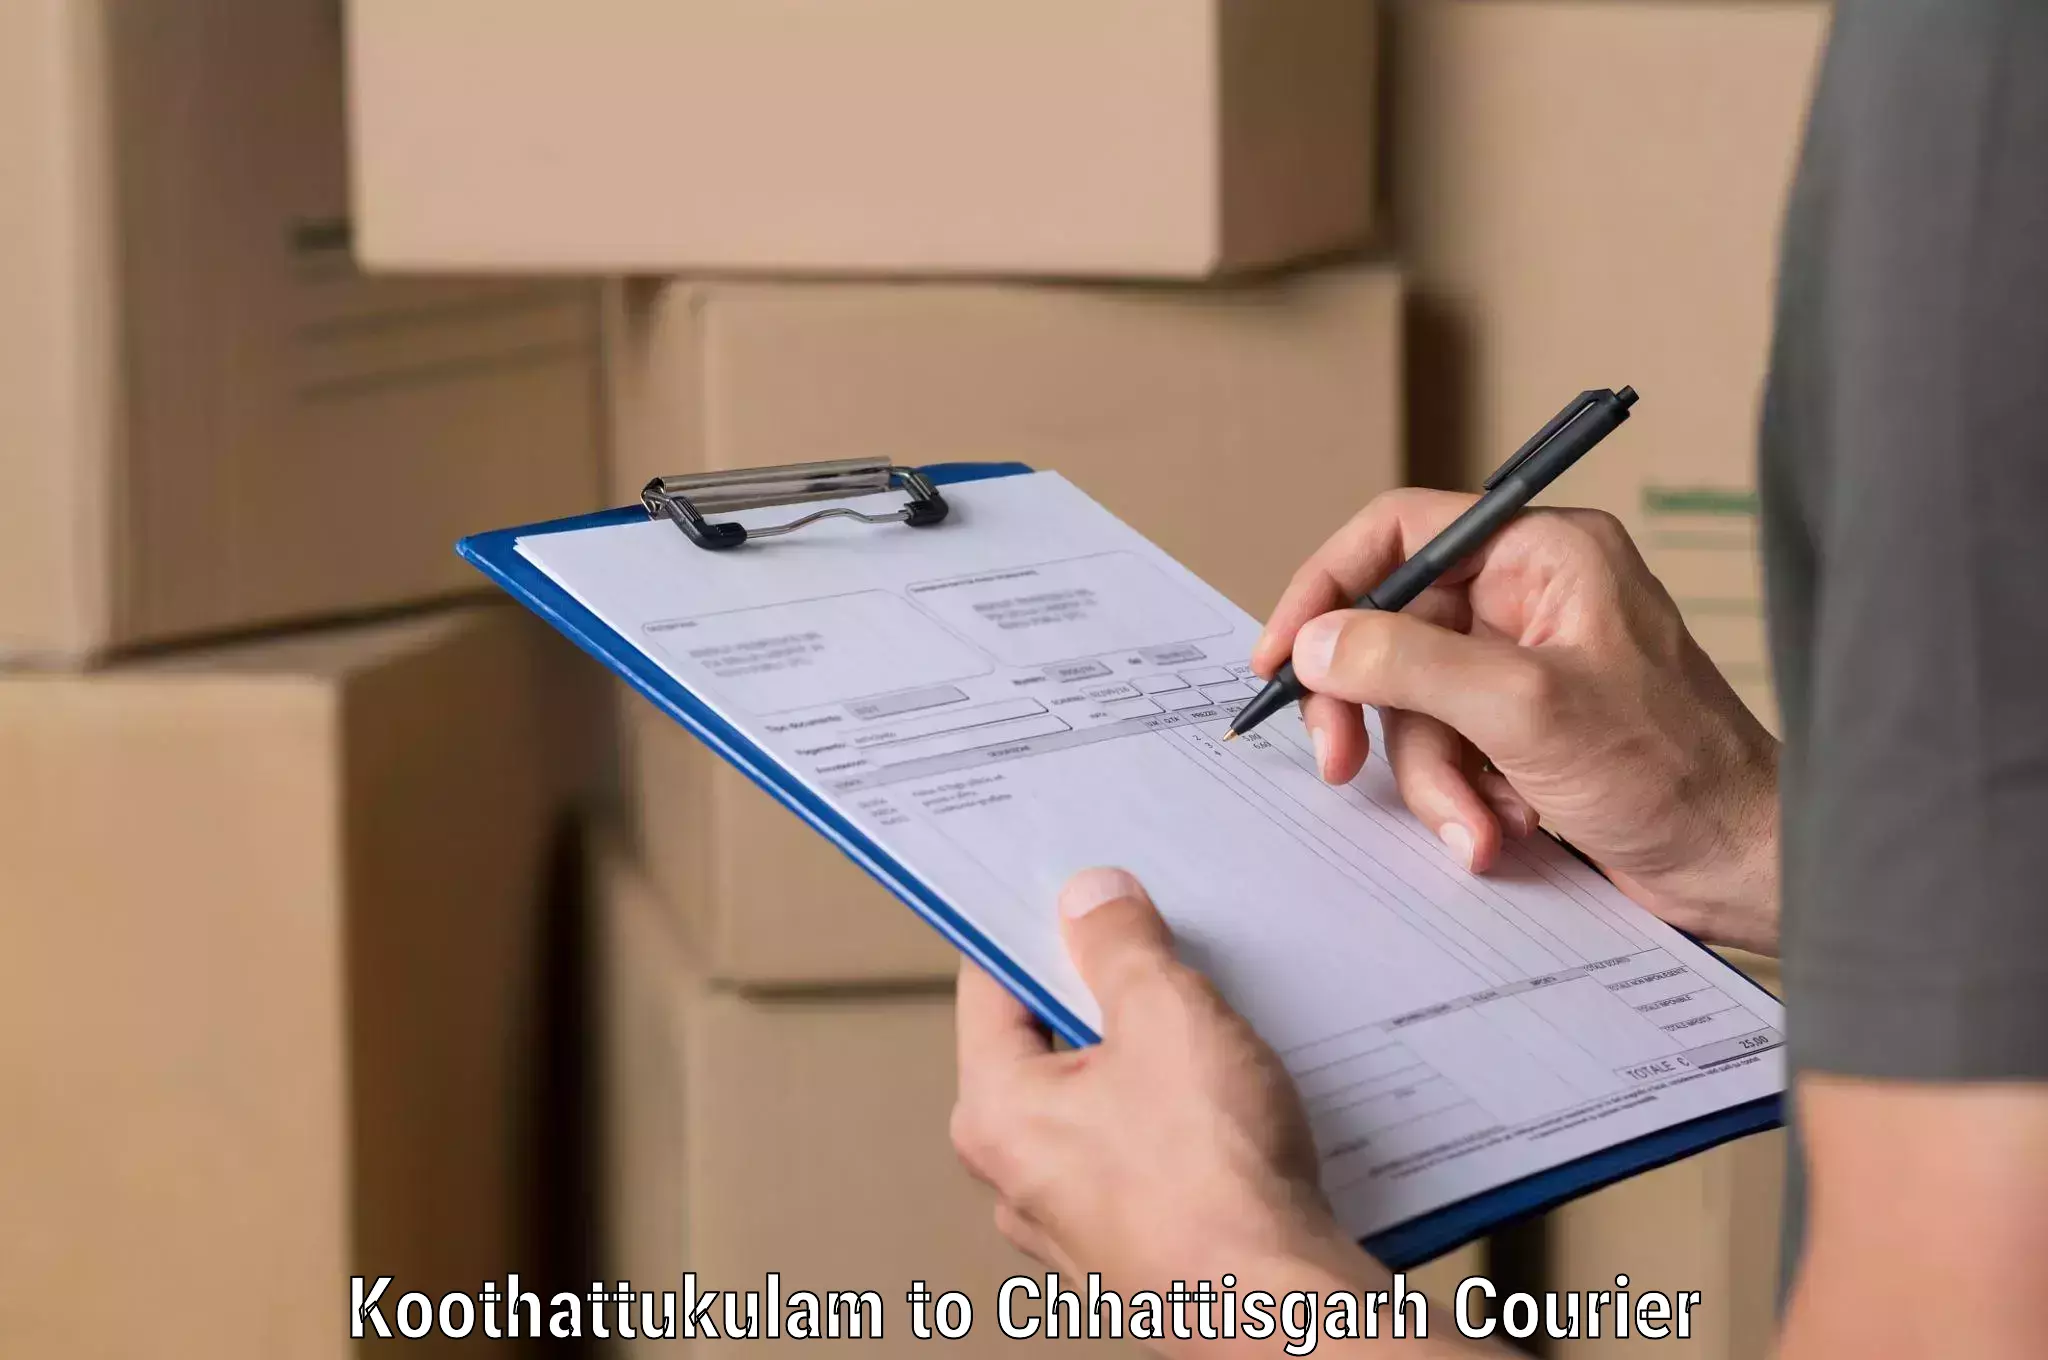 Bulk courier orders Koothattukulam to Raigarh Chhattisgarh